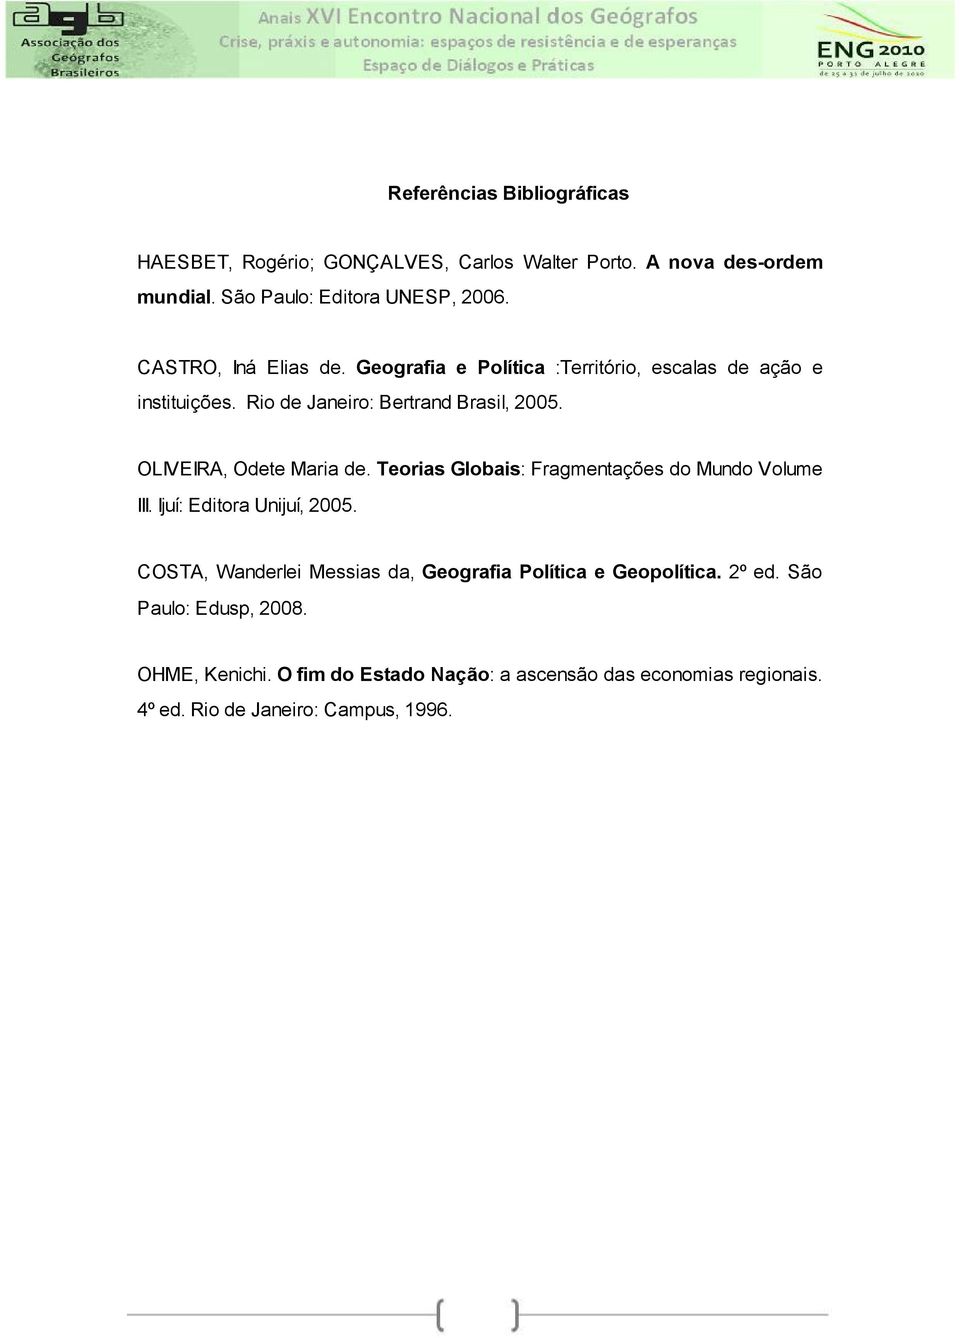 OLIVEIRA, Odete Maria de. Teorias Globais: Fragmentações do Mundo Volume III. Ijuí: Editora Unijuí, 2005.